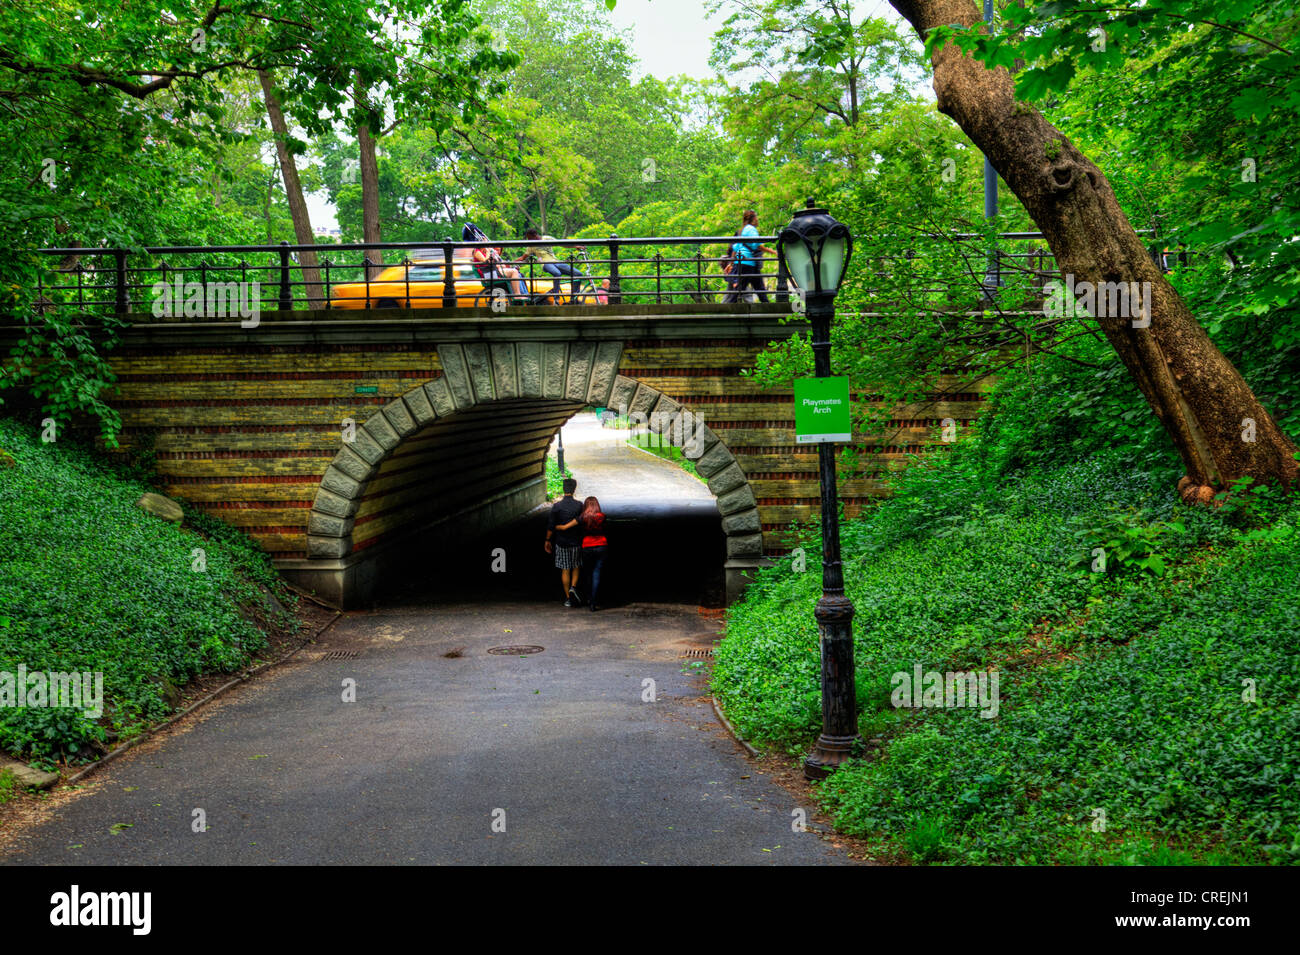 Spielkameraden Arch im Central Park. Entworfen von Calvert Vaux, verbindet Spielkameraden Bogen Fußgänger zwischen der Molkerei und das Karussell Stockfoto